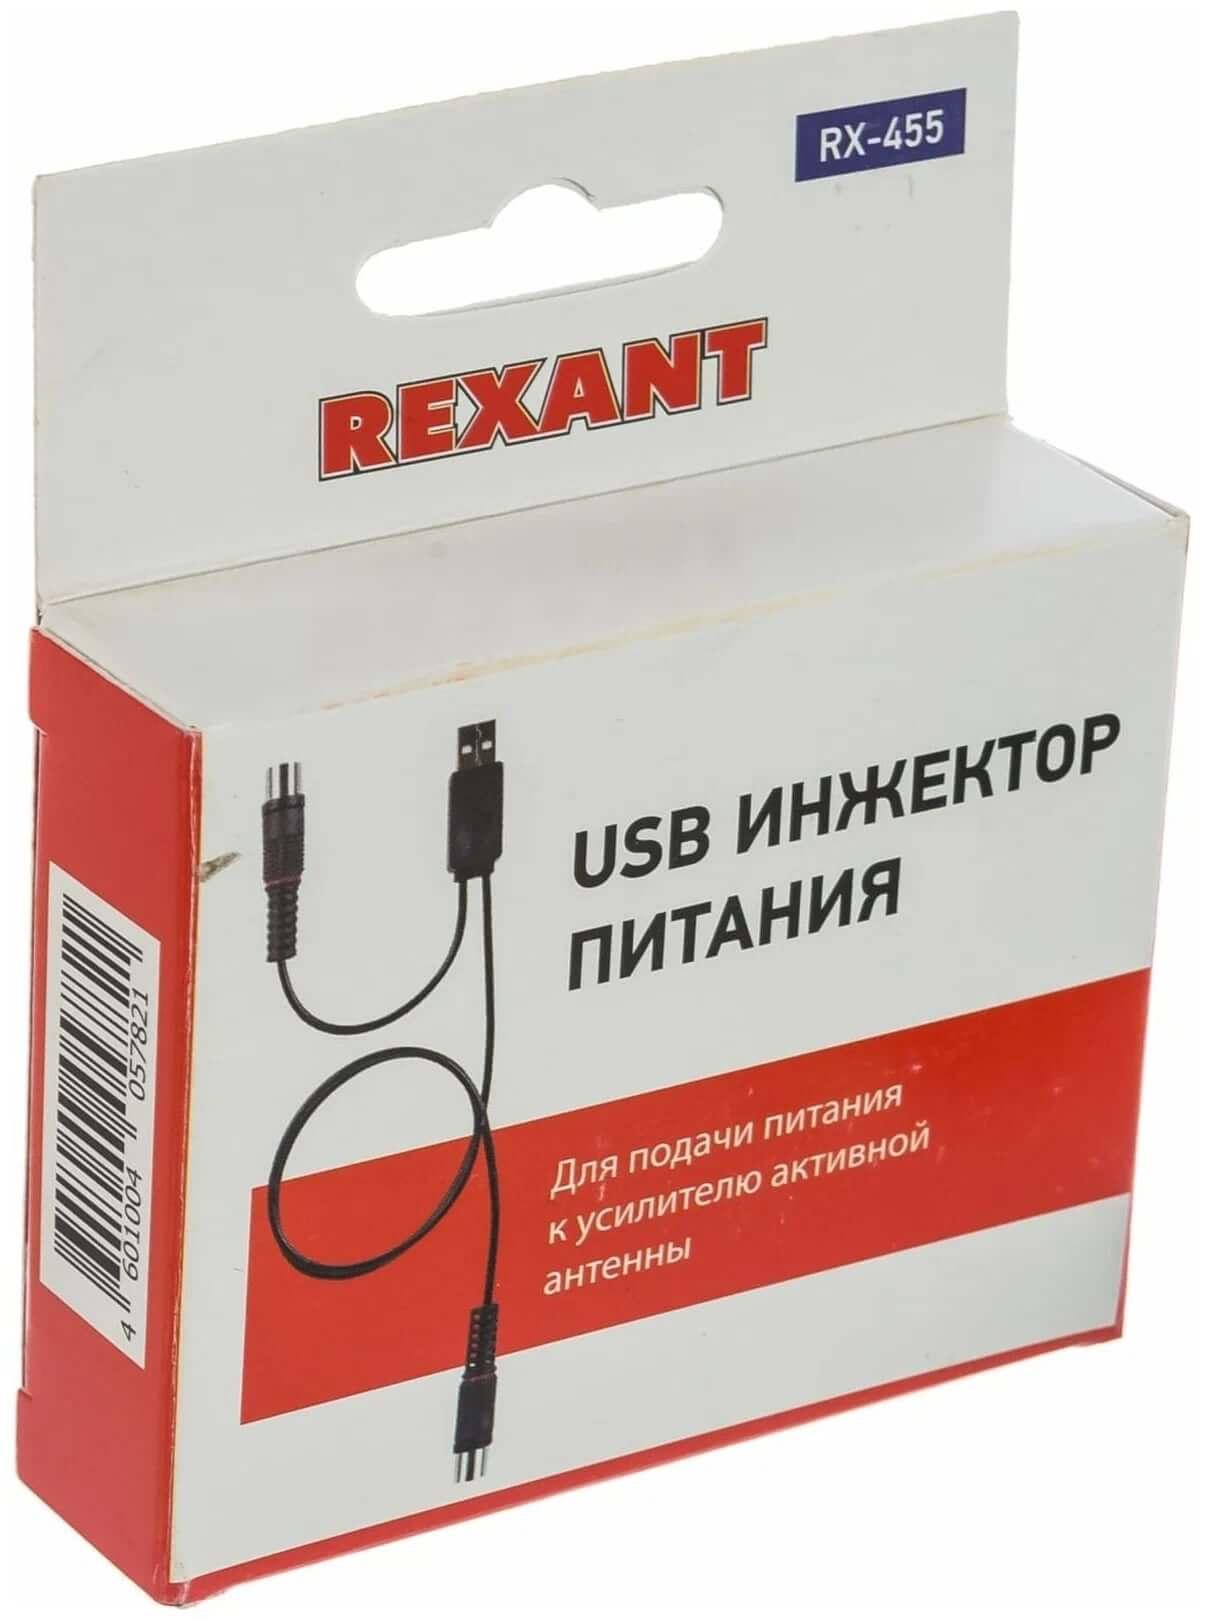 REXANT RX-455 USB box